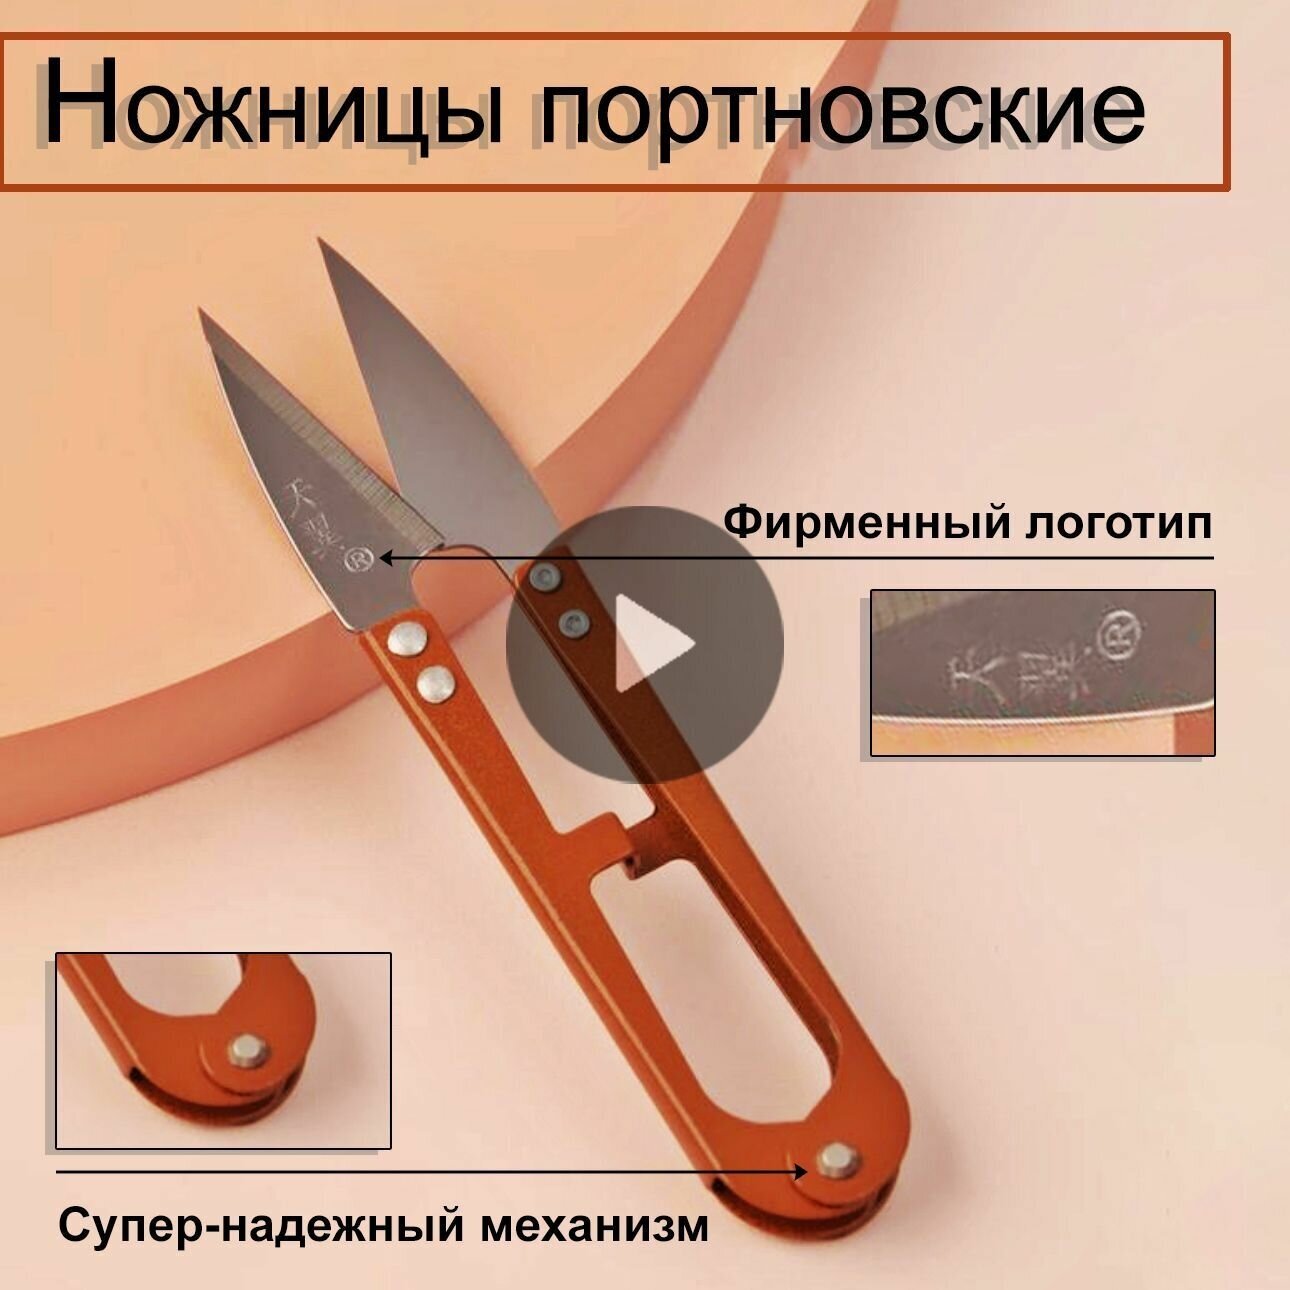 Ножницы для обрезки ниток шитья и рукоделия перекусы сниппер ниппер цвет микс